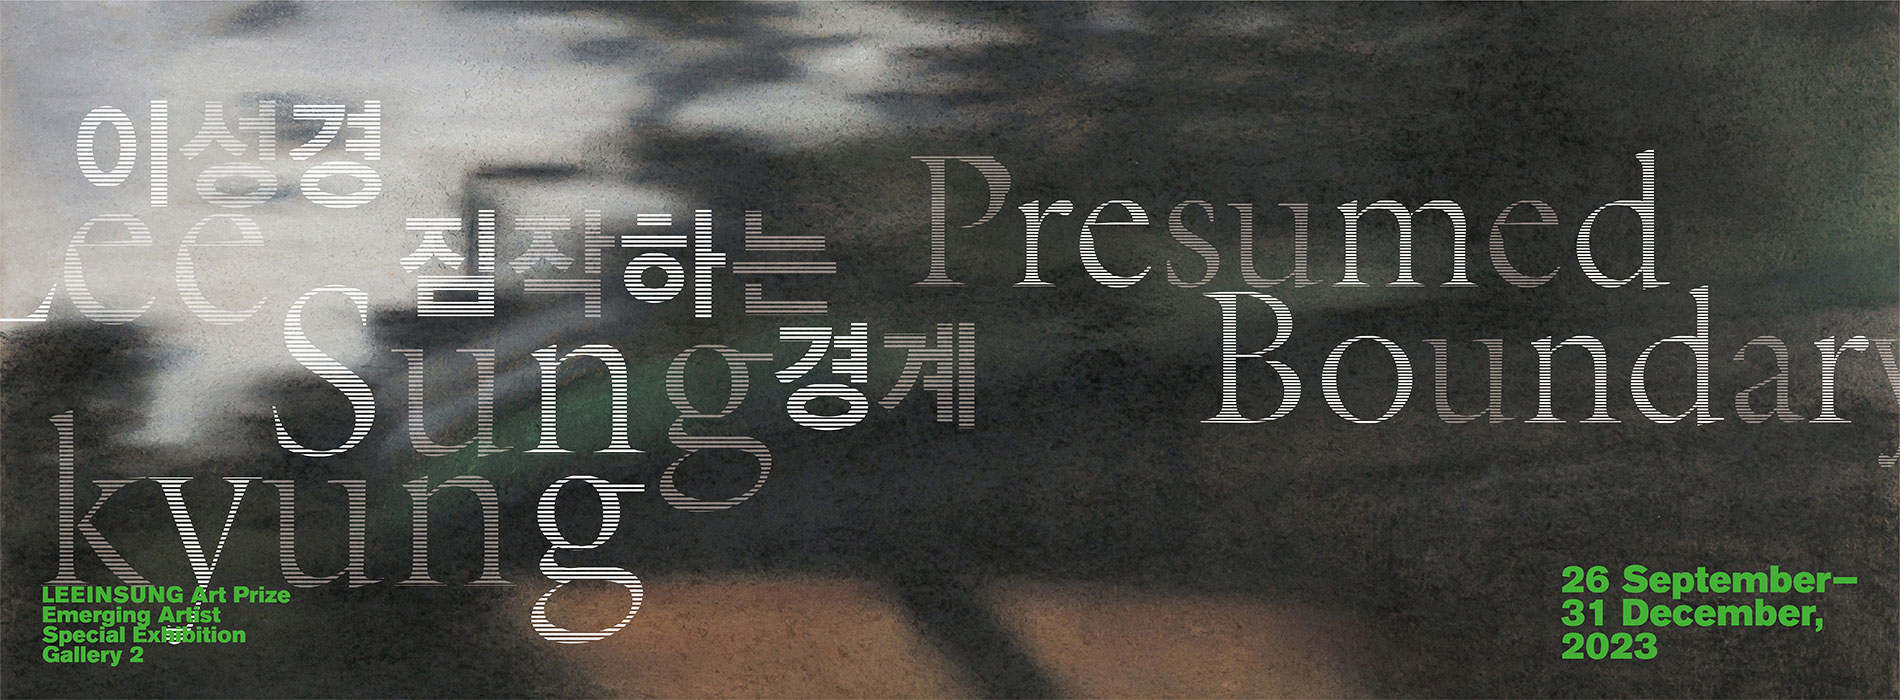 이인성미술상 수상자전 연계 청년특별전《Lee Sungkyung: 짐작하는 경계》